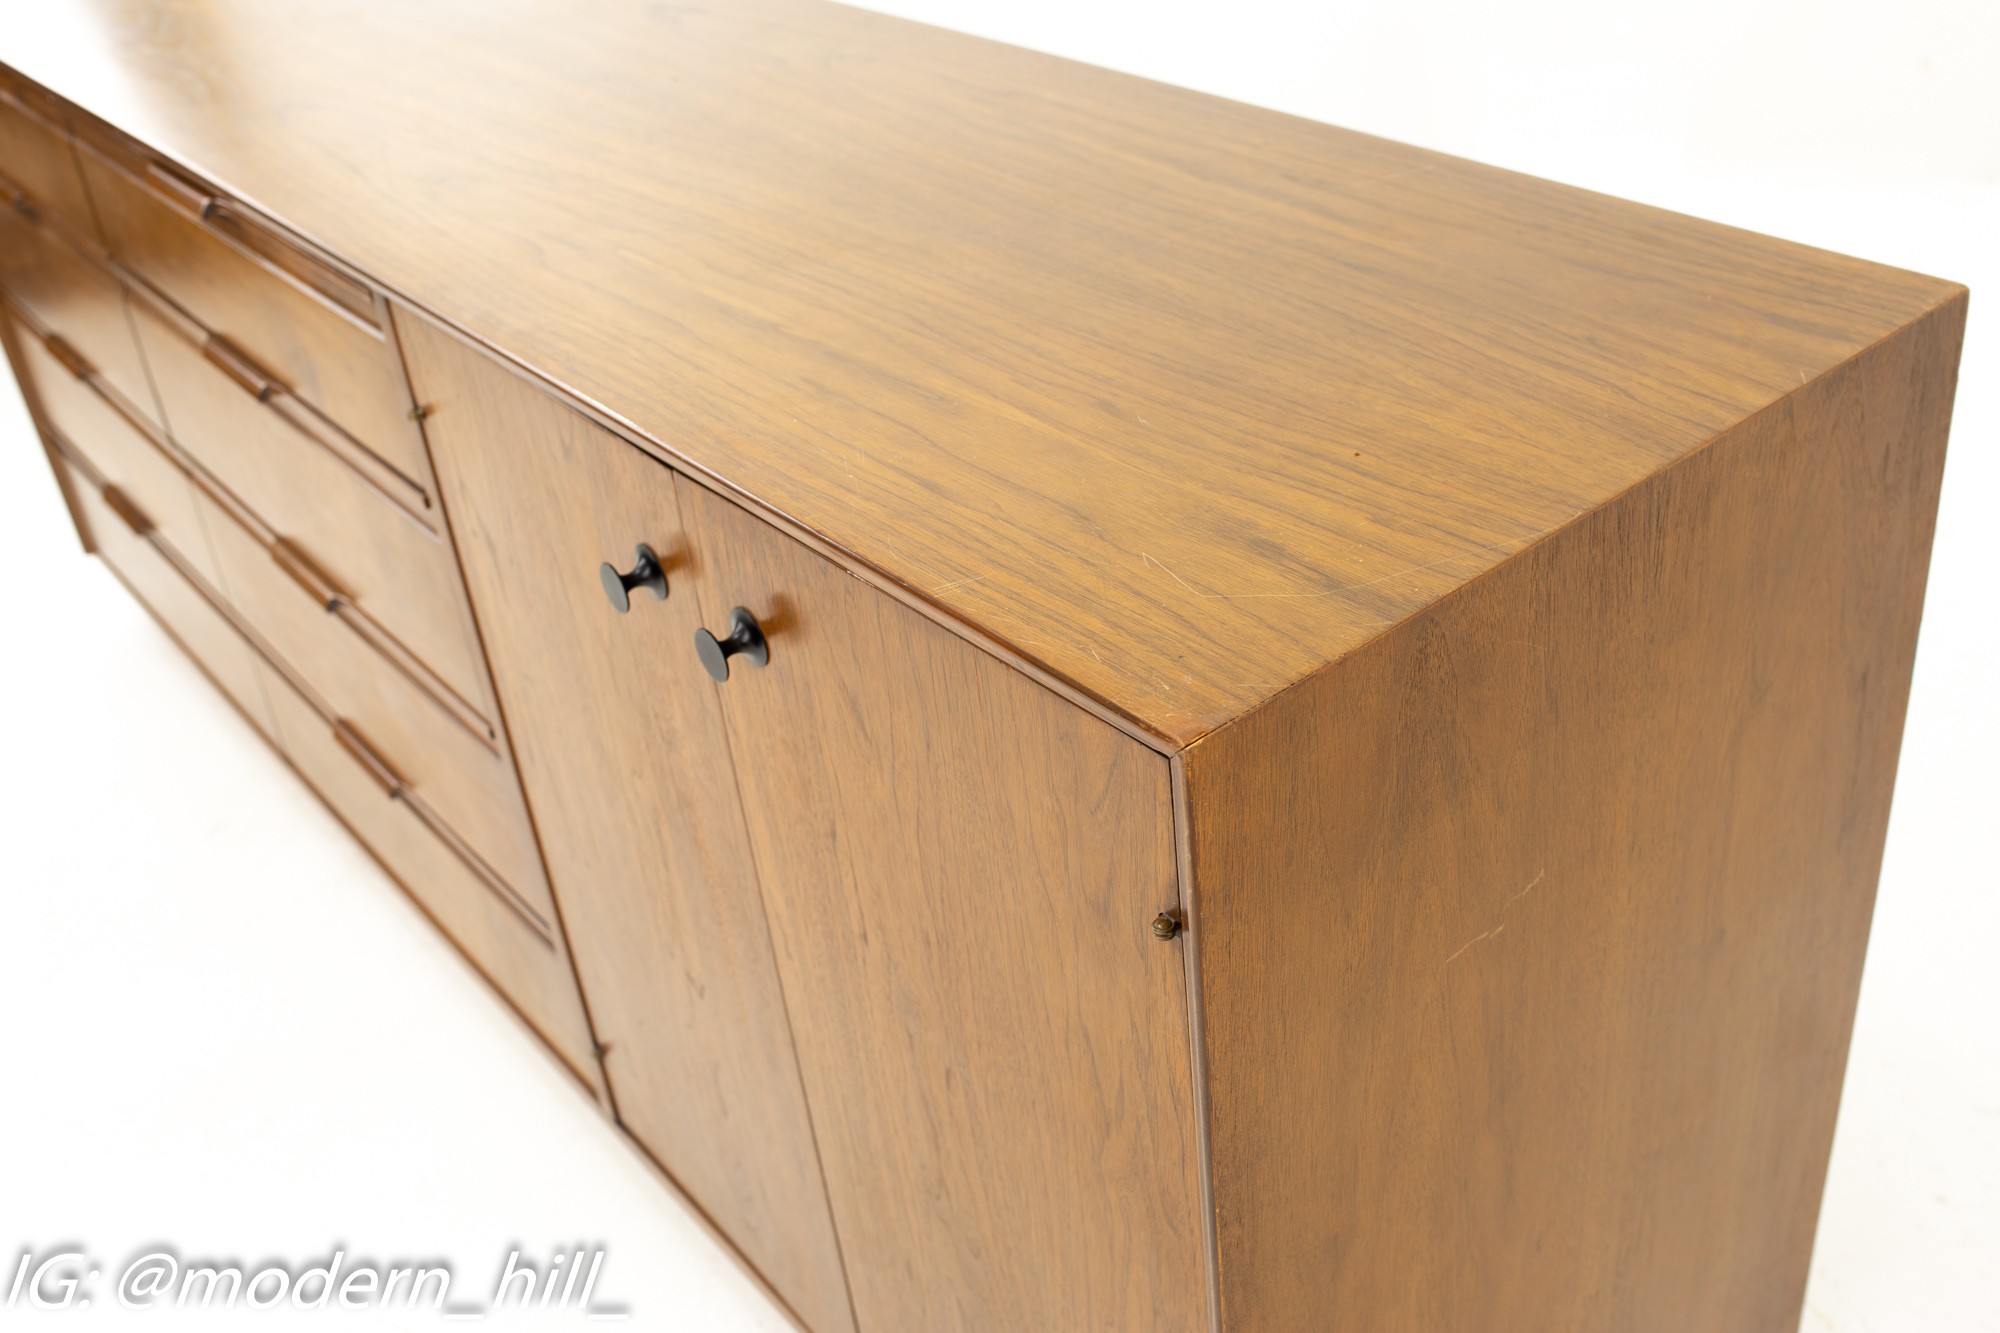 American of Martinsville Mid Century Walnut 12 Drawer Dresser Credenza Cabinet